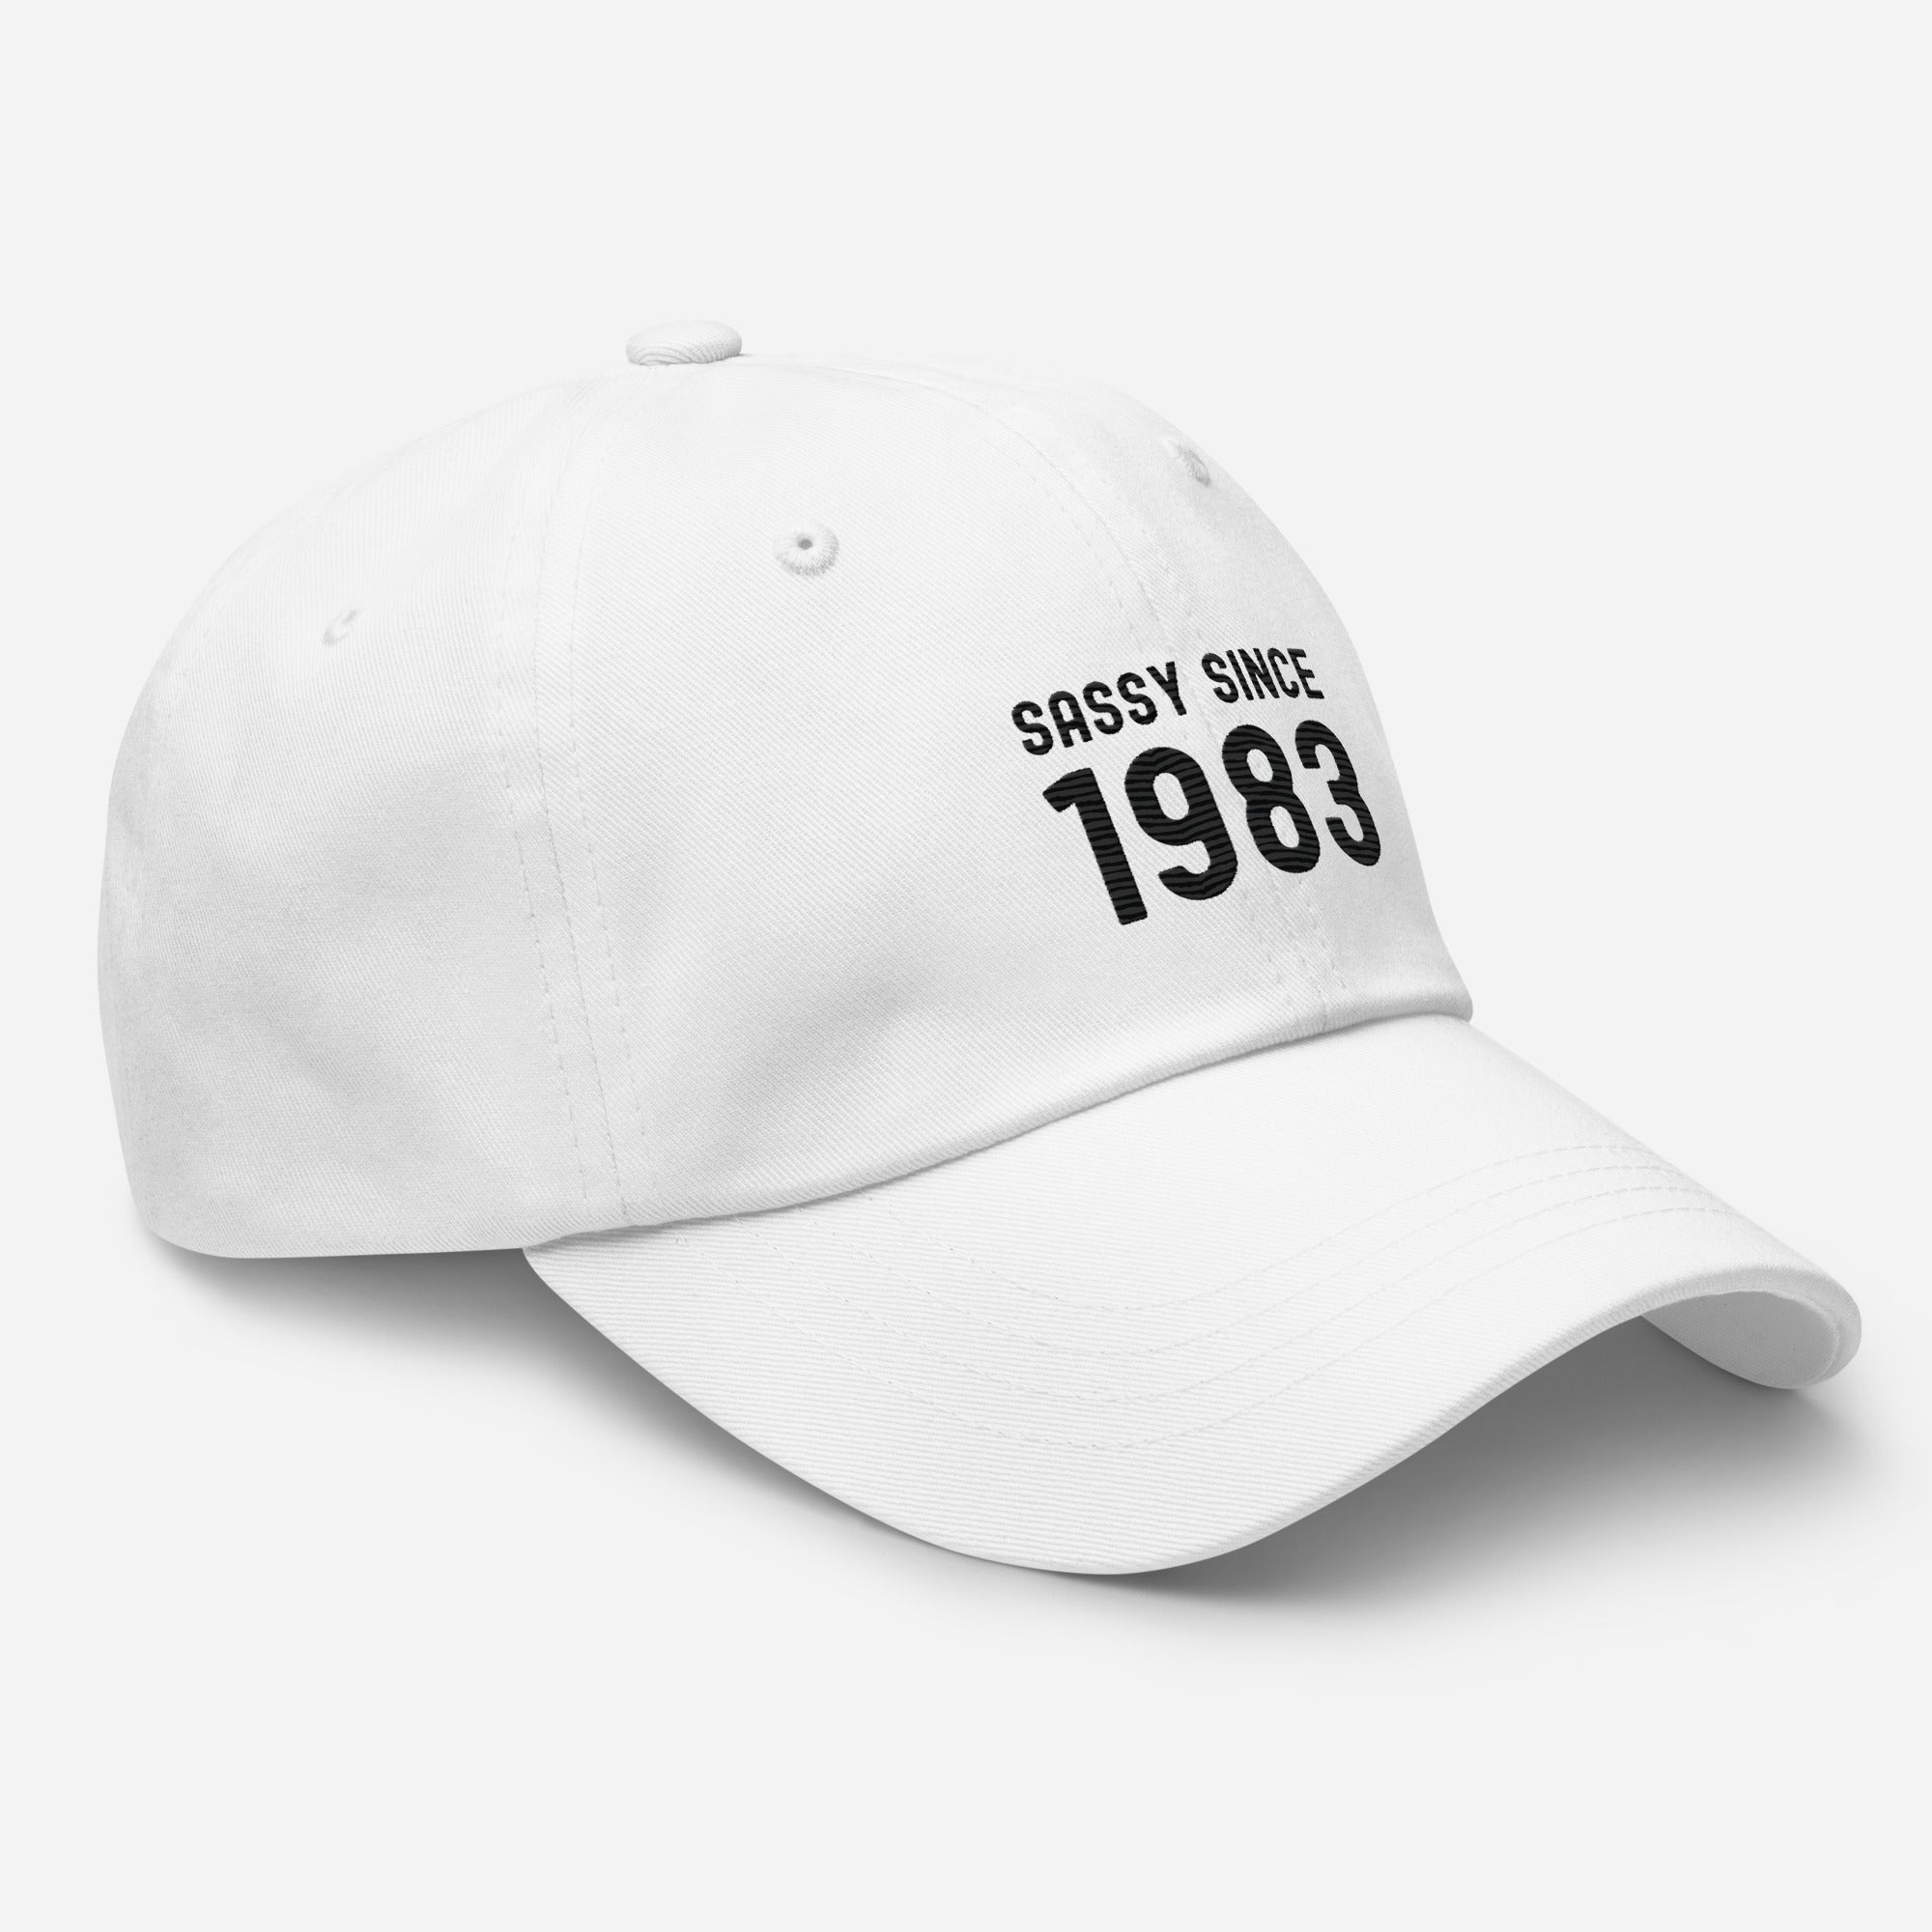 Hat | Sassy since 1983